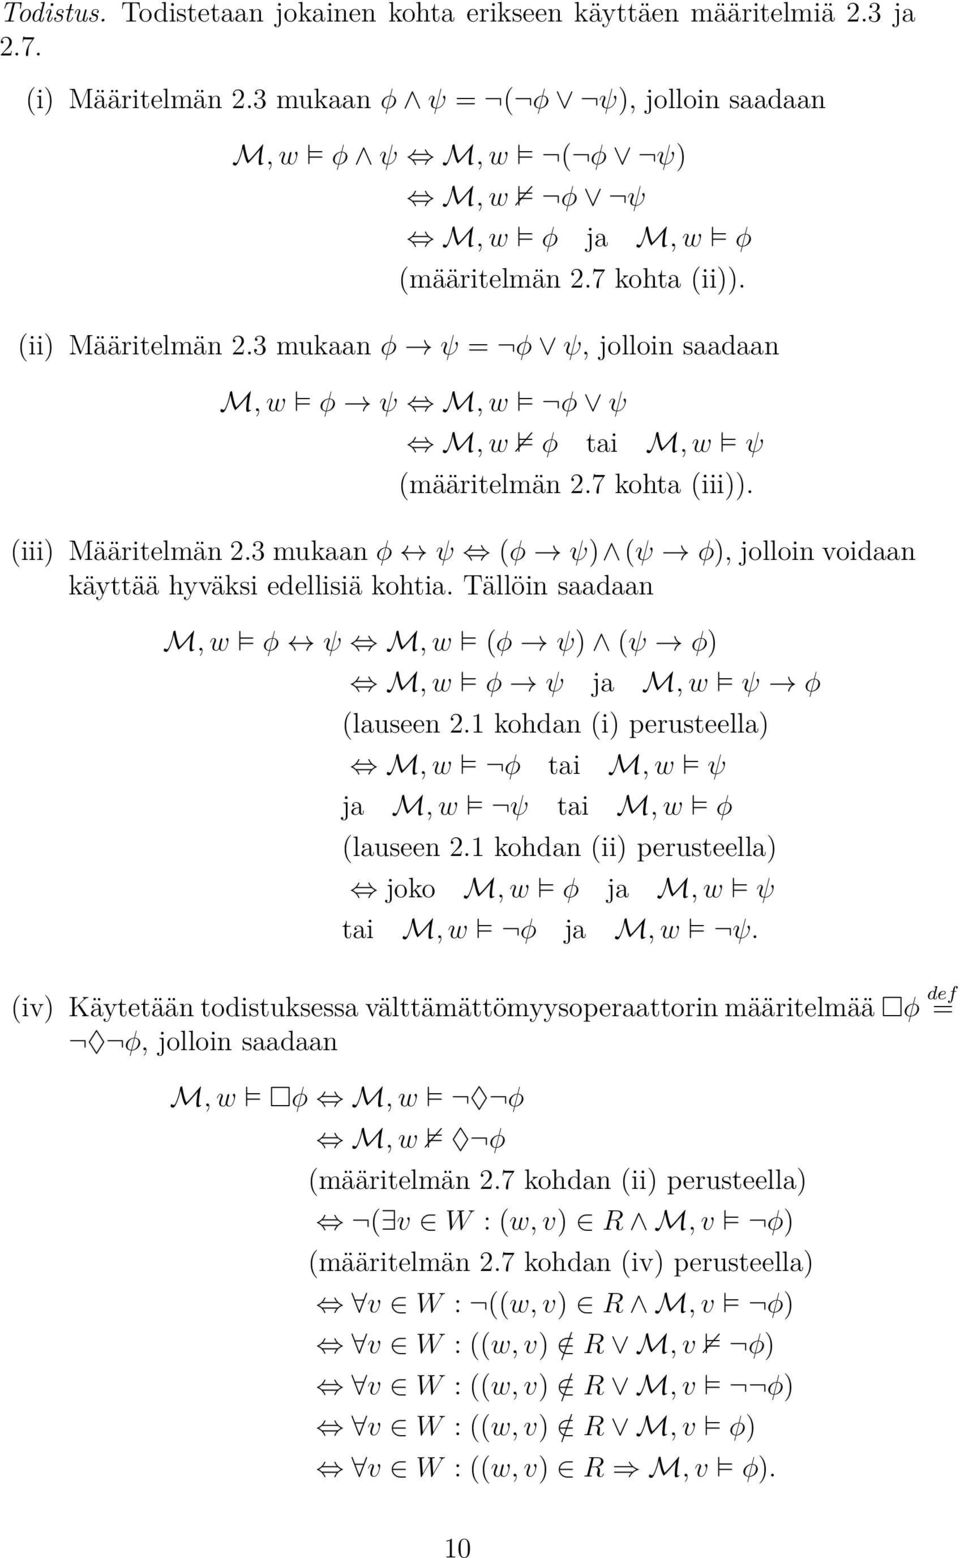 3 mukaan φ ψ (φ ψ) (ψ φ), jolloin voidaan käyttää hyväksi edellisiä kohtia. Tällöin saadaan M, w φ ψ M, w (φ ψ) (ψ φ) M, w φ ψ ja M, w ψ φ (lauseen 2.